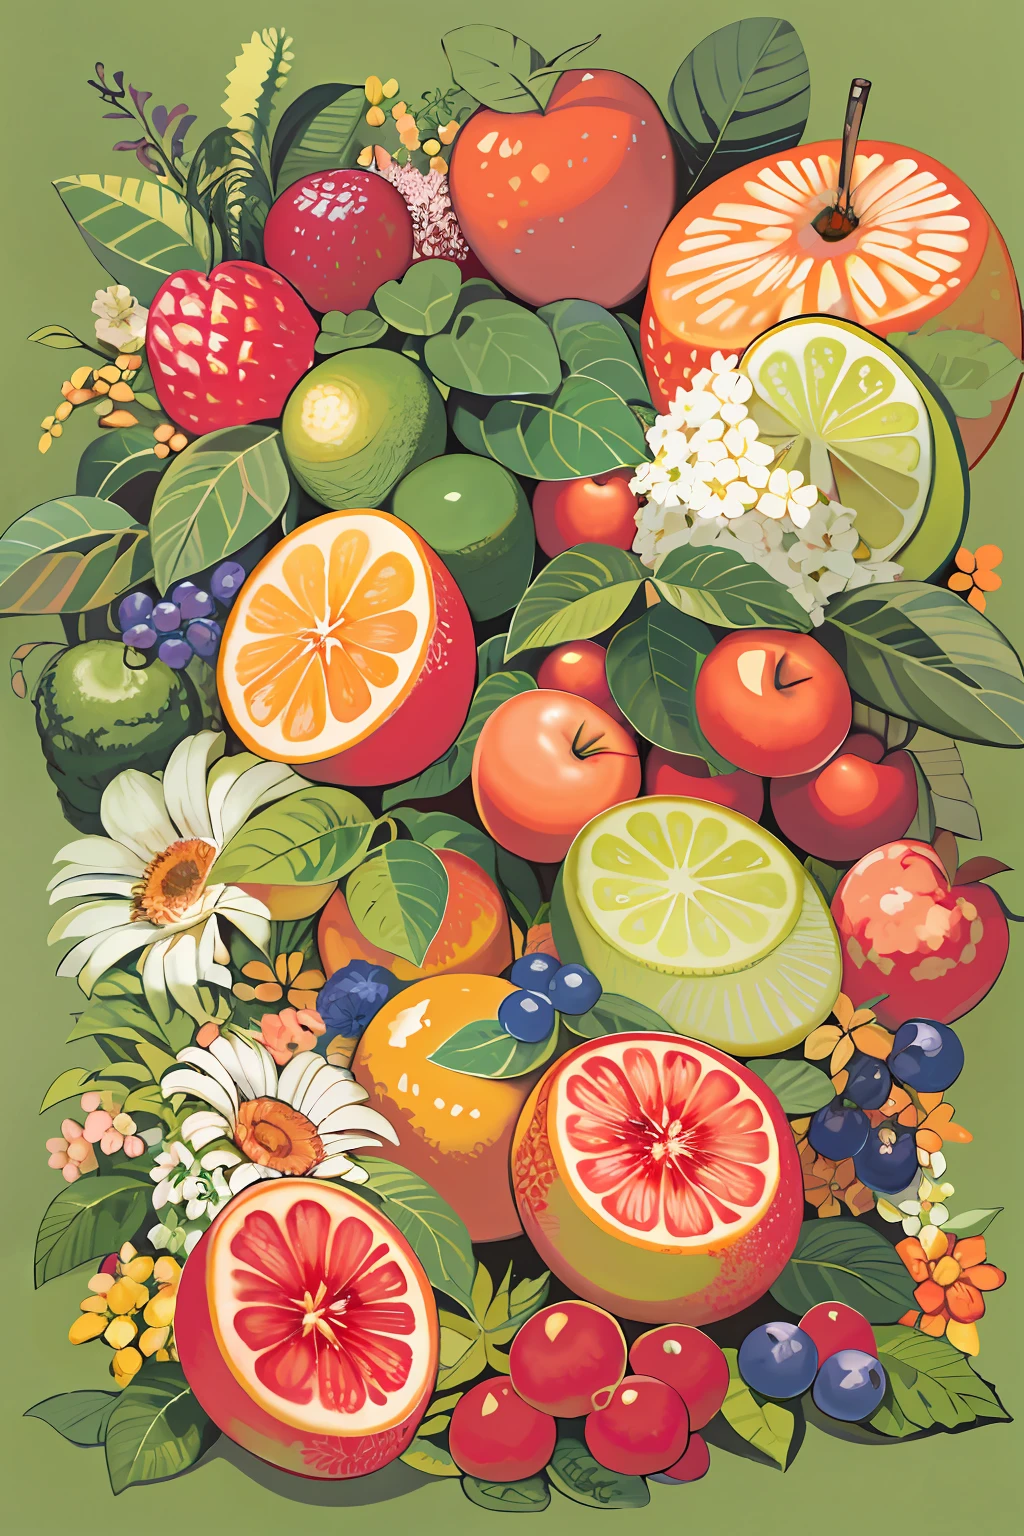 هناك لوحة لمجموعة من الفواكه على الطاولة, الفاكهة والزهور, التوضيح بالألوان الكاملة, مؤلف：جون ويرناتشوت, made of الفاكهة والزهور, مصنوعة من الزهور والفاكهة, الفاكهة, مليئة بالألوان ث 1024, التوضيح الرقمي بالألوان الكاملة, مؤلف：ريتشارد مايهيو, الفن الرسمي, في لوحات الغواش التفصيلية, التوضيح الزائف